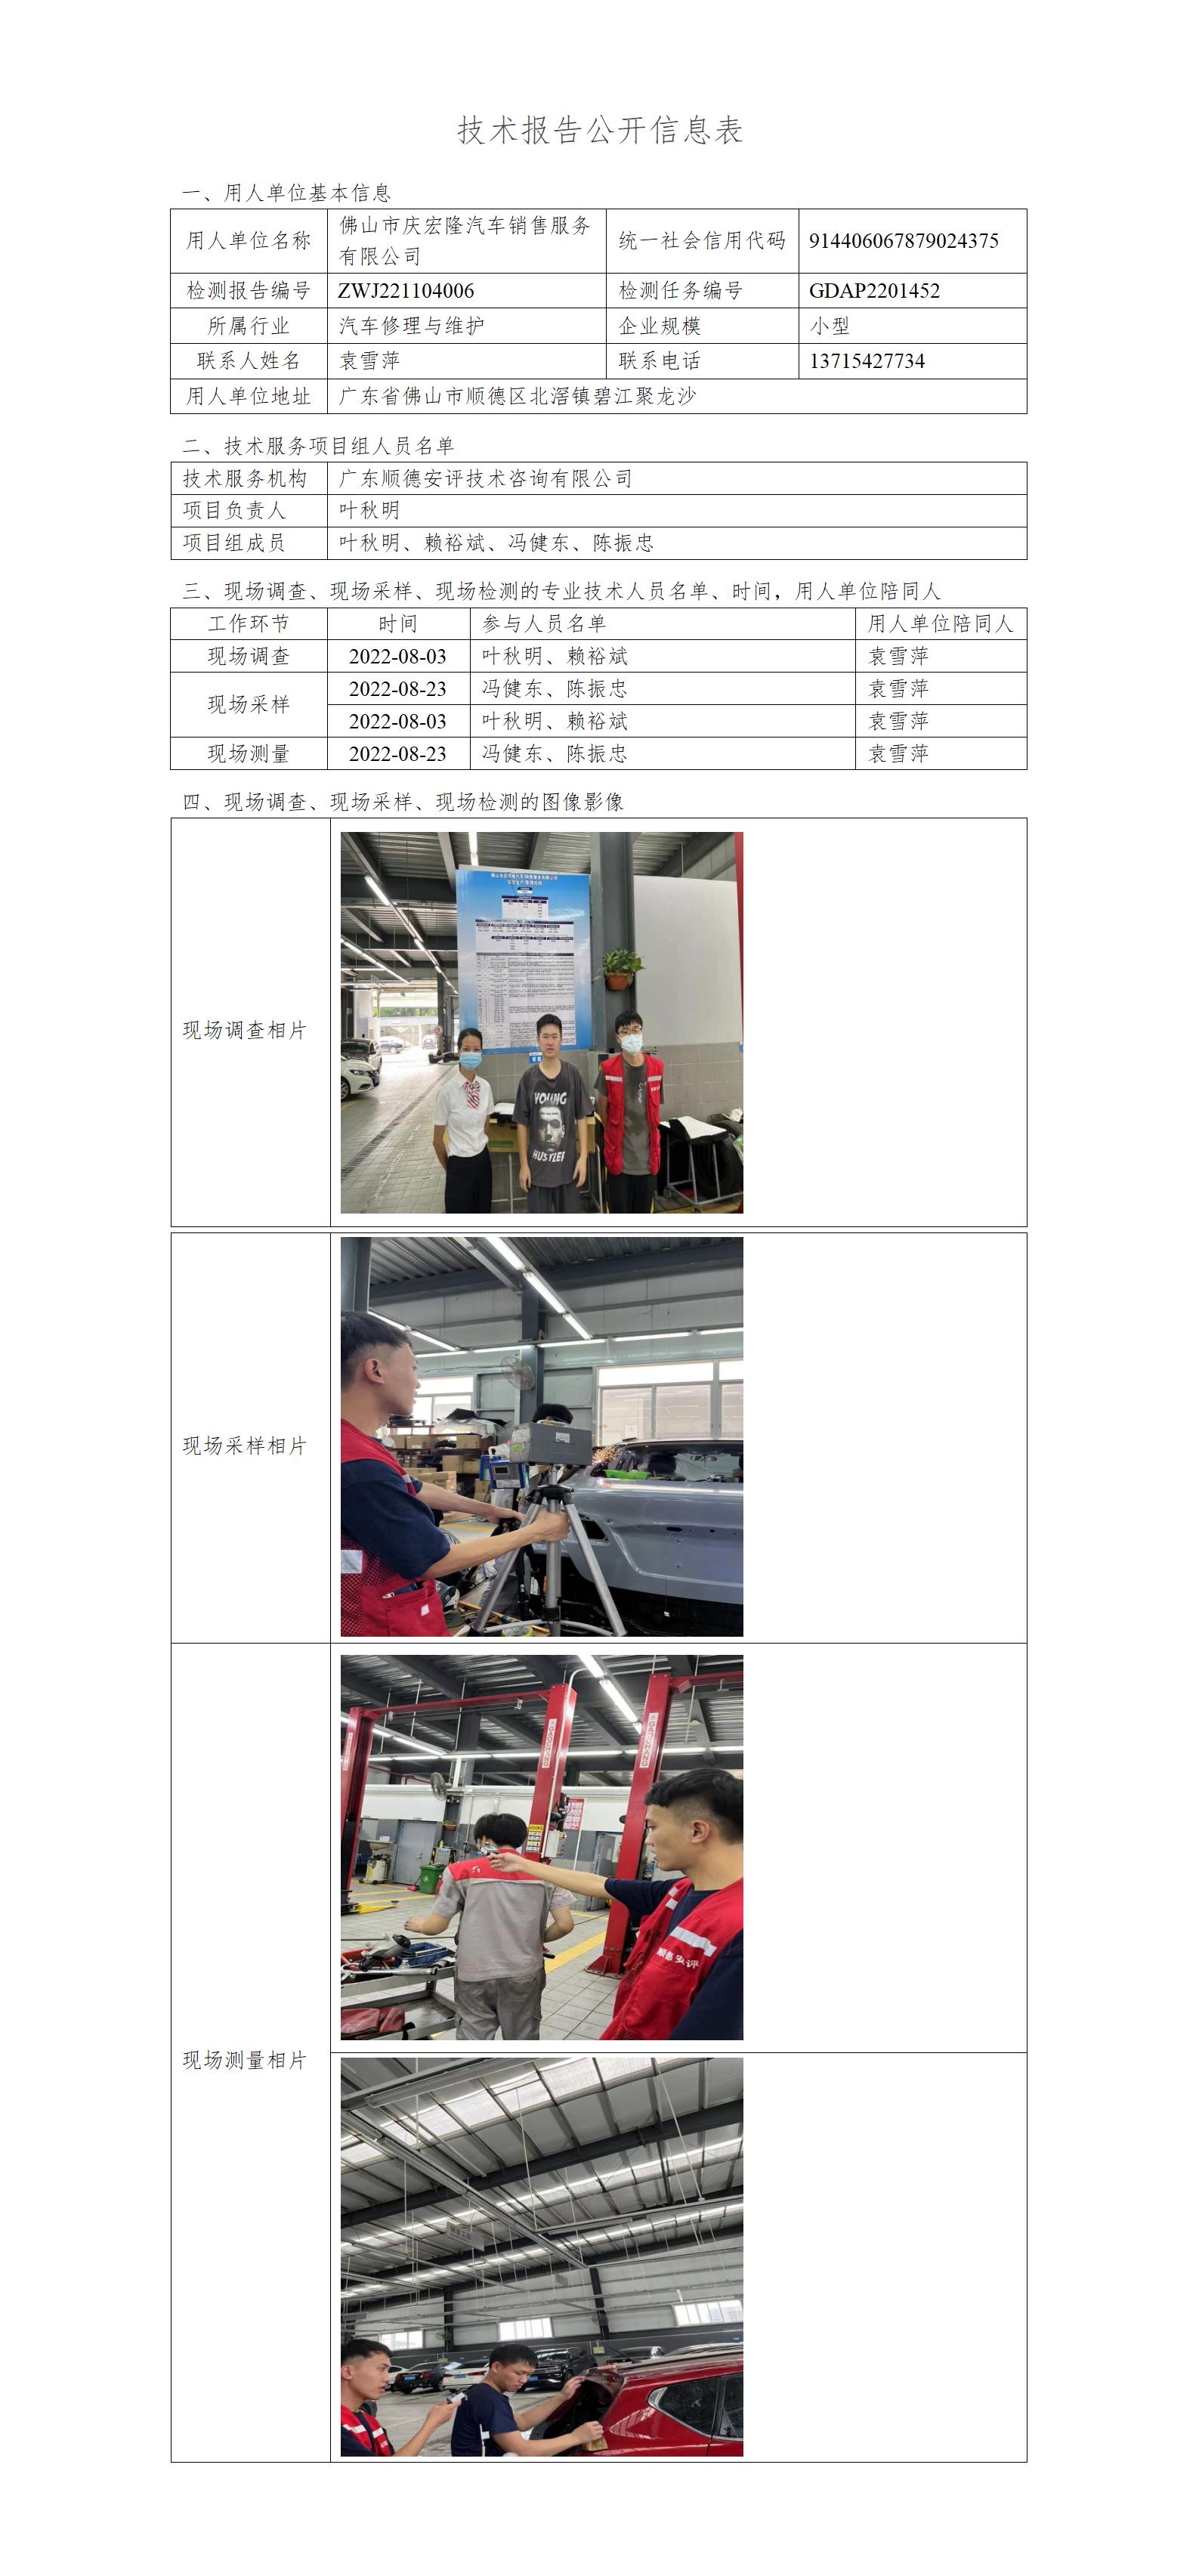 佛山市庆宏隆汽车销售服务有限公司-2022-技术报告公开信息表_01.jpg